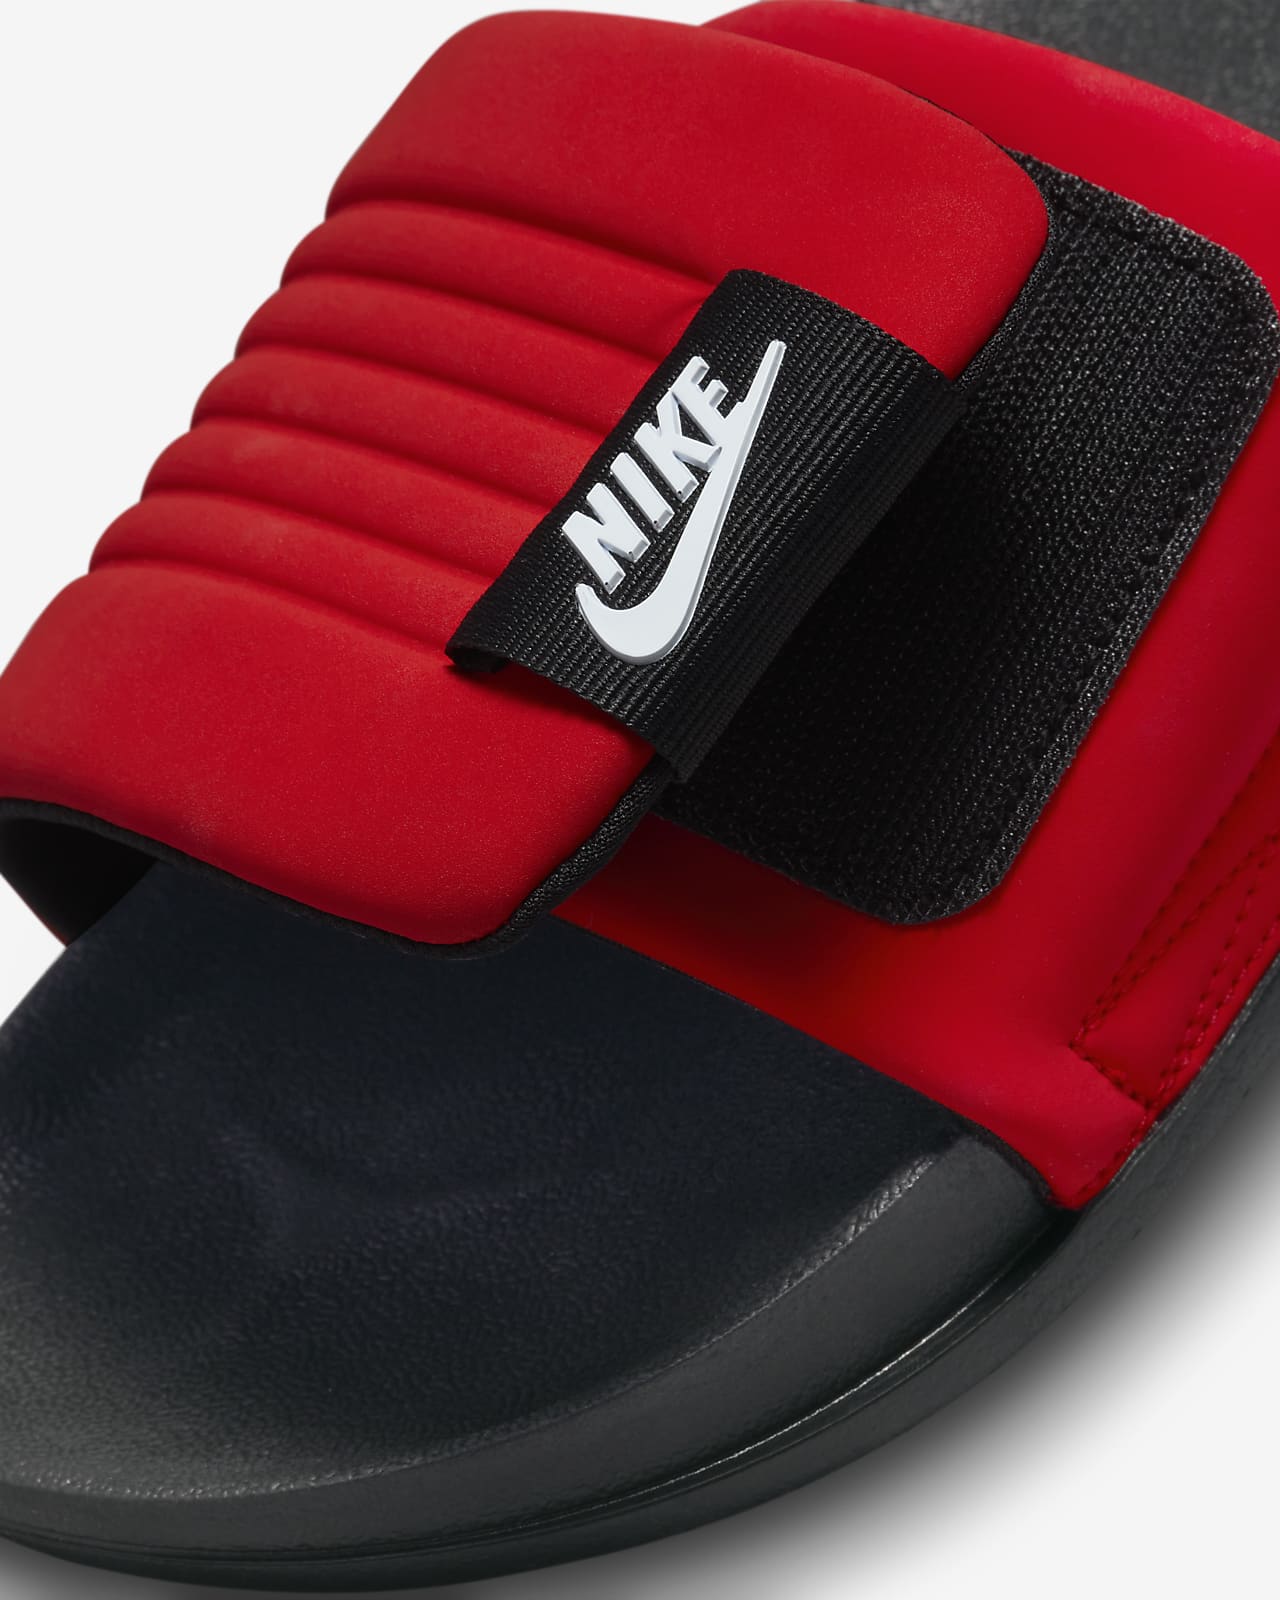 Nike Offcourt Slide 'Black University Red' | Men's Size 8